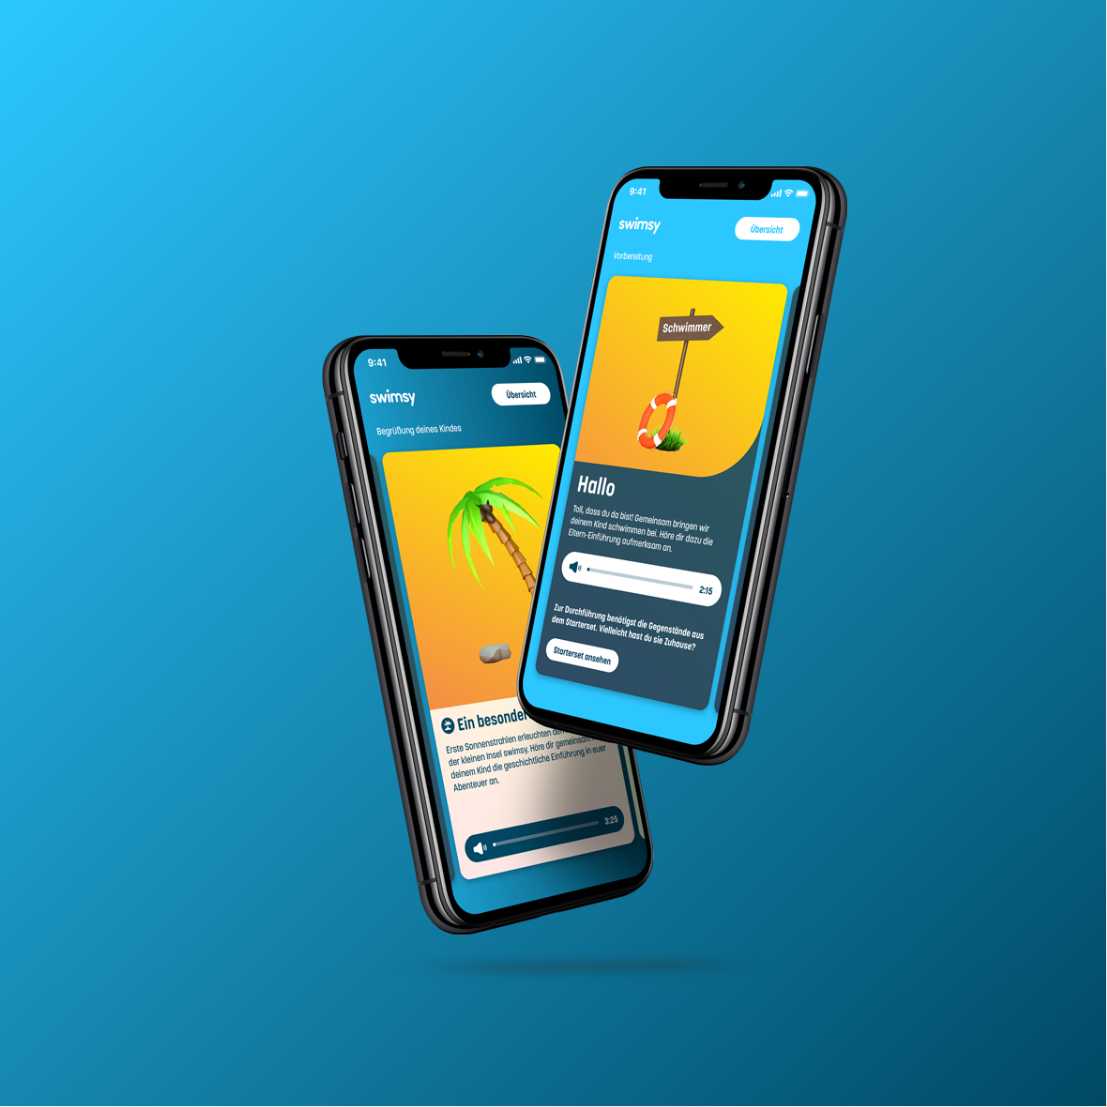 Zwei iPhones auf blauem Hintergrund mit geöffneter swimsy-App